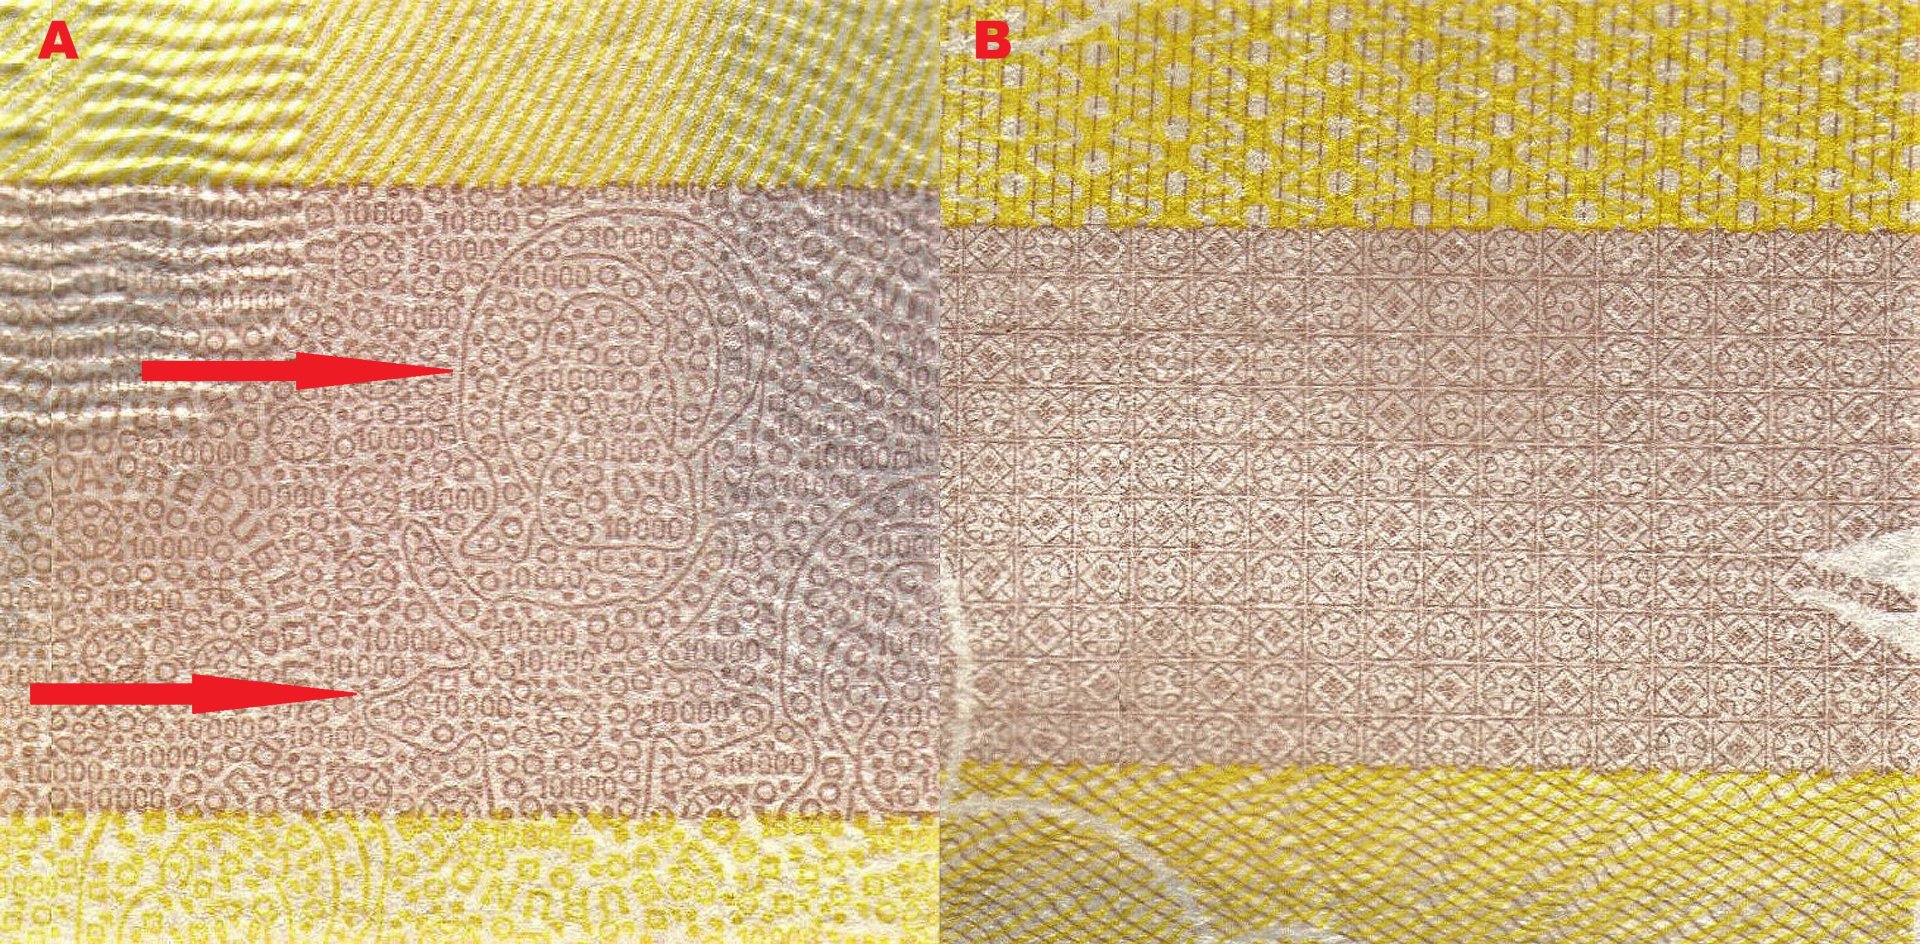 7 A) Dolní širší pruh v levém panelu s mikropísmem, nominály a liniemi vytvářejícími obraz hrocha (horní červená šipka) nebo čelně hledící hlavy skotu (dolní červená šipka) B) Grafický ornament v pravém panelu.